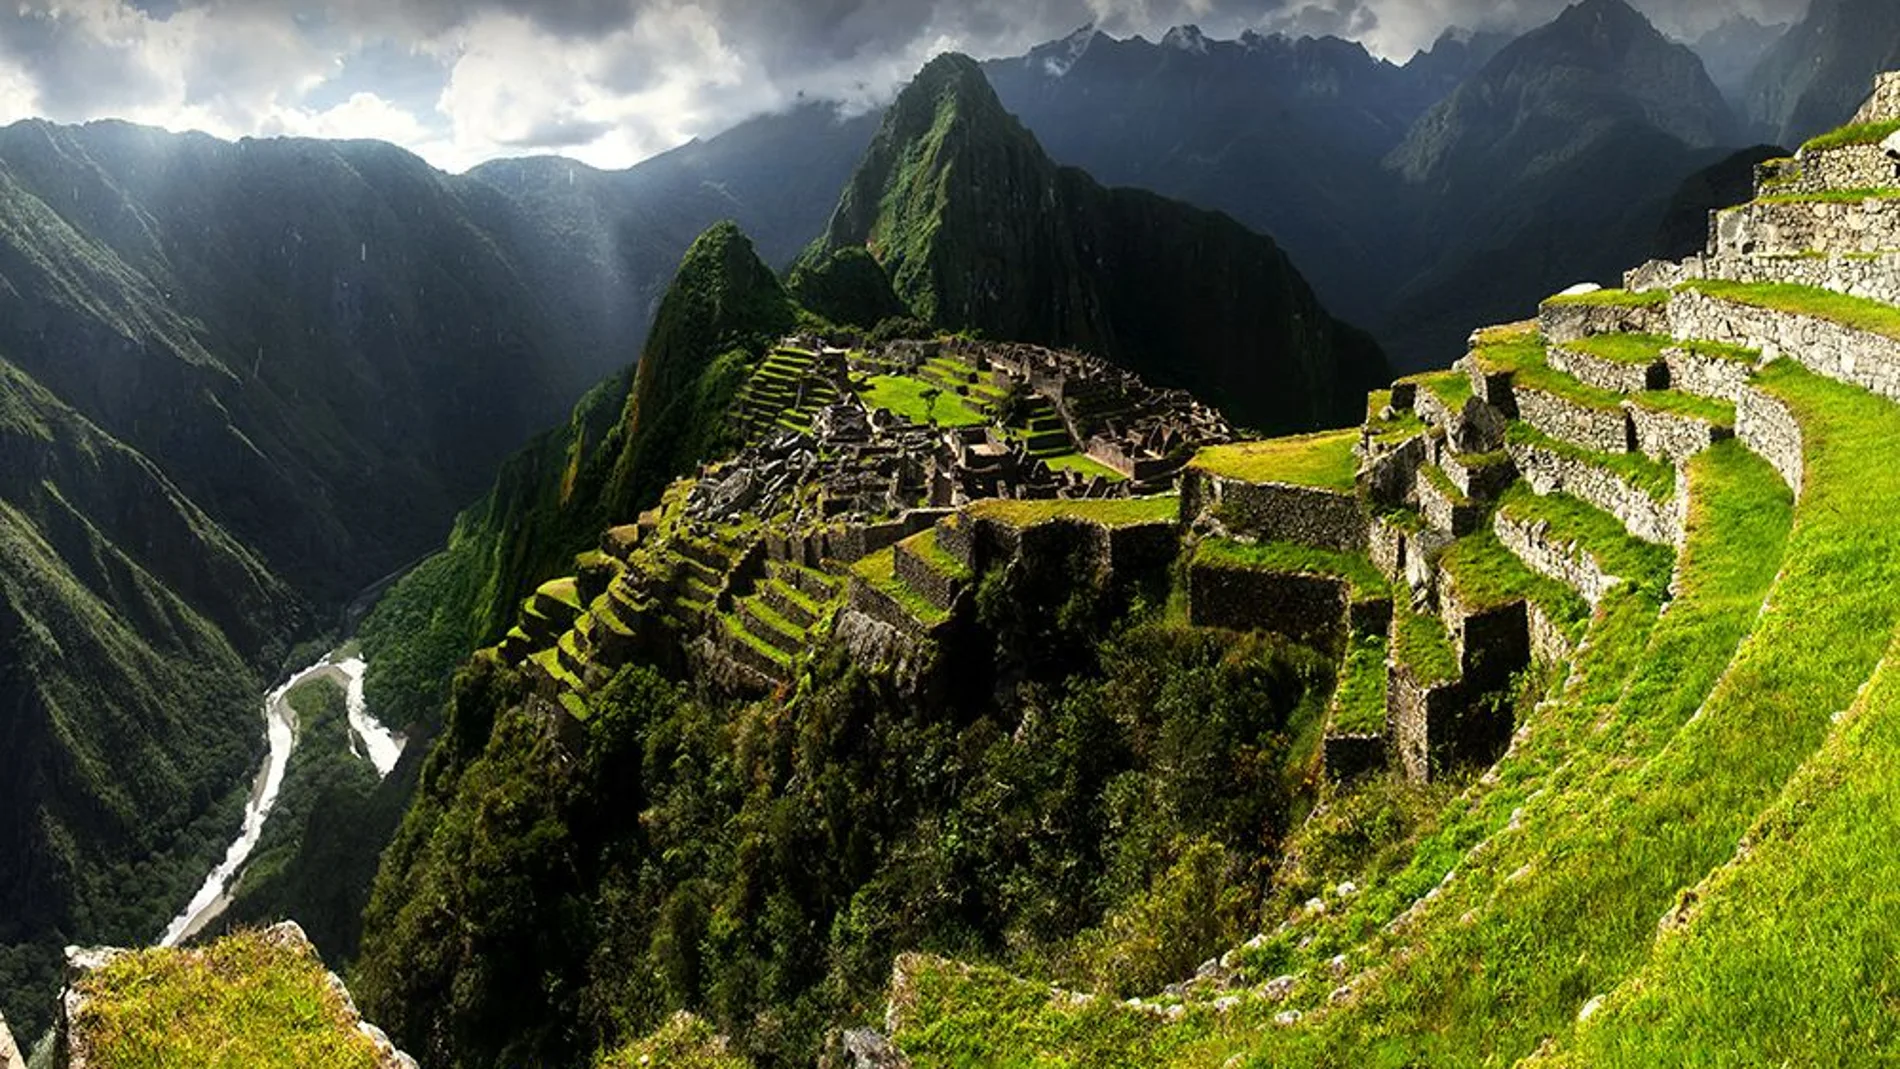 El descubrimiento de Machu Picchu a comienzos del siglo XX, reavivó las discusiones sobre la existencia de ciudades perdidas como El Dorado.